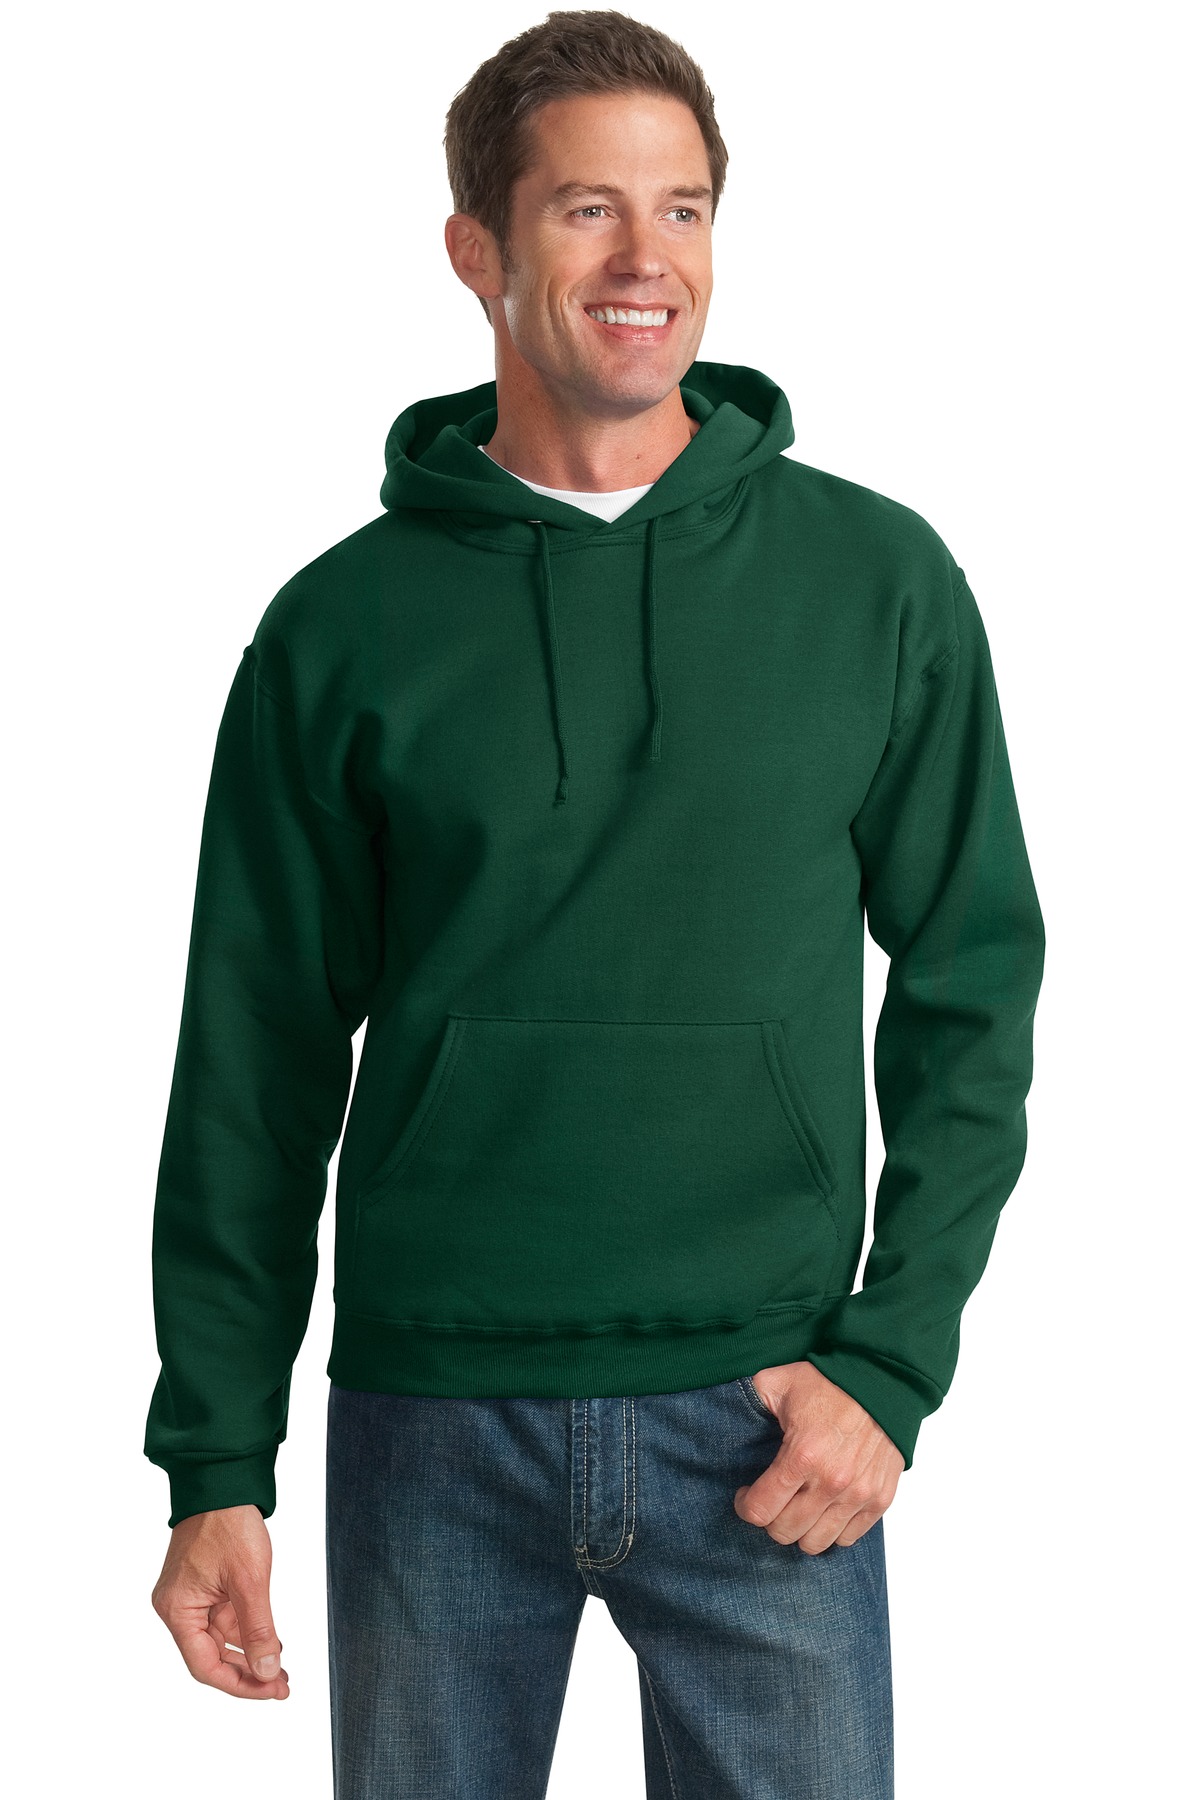 Jerzees® - NuBlend® Pullover Hooded Sweatshirt.-